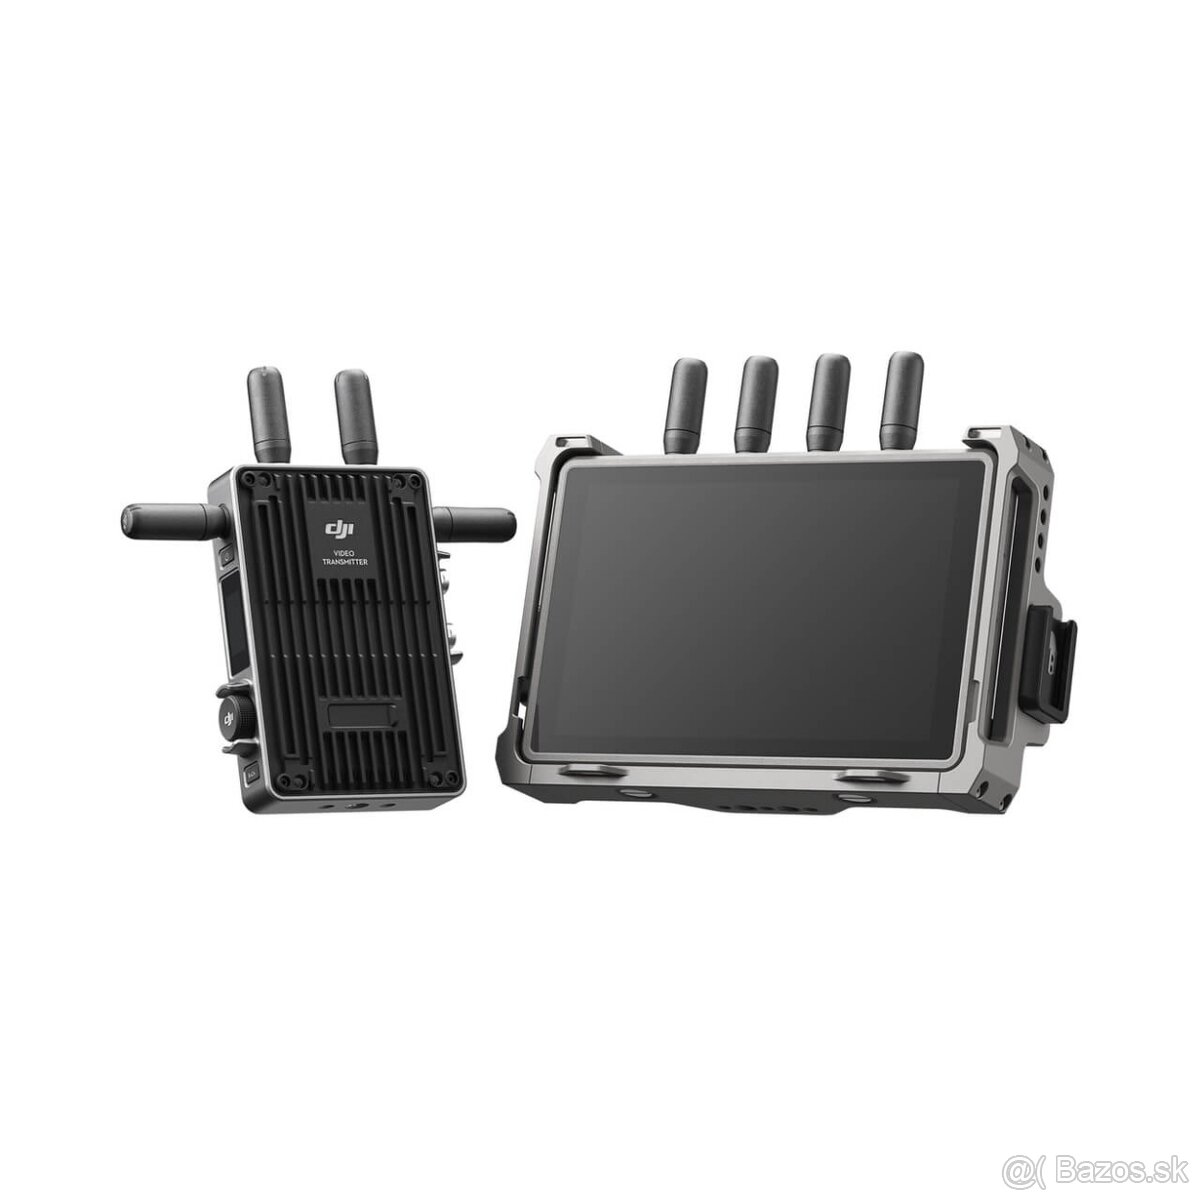 DJI Transmission Combo + SDI module + V mount kit